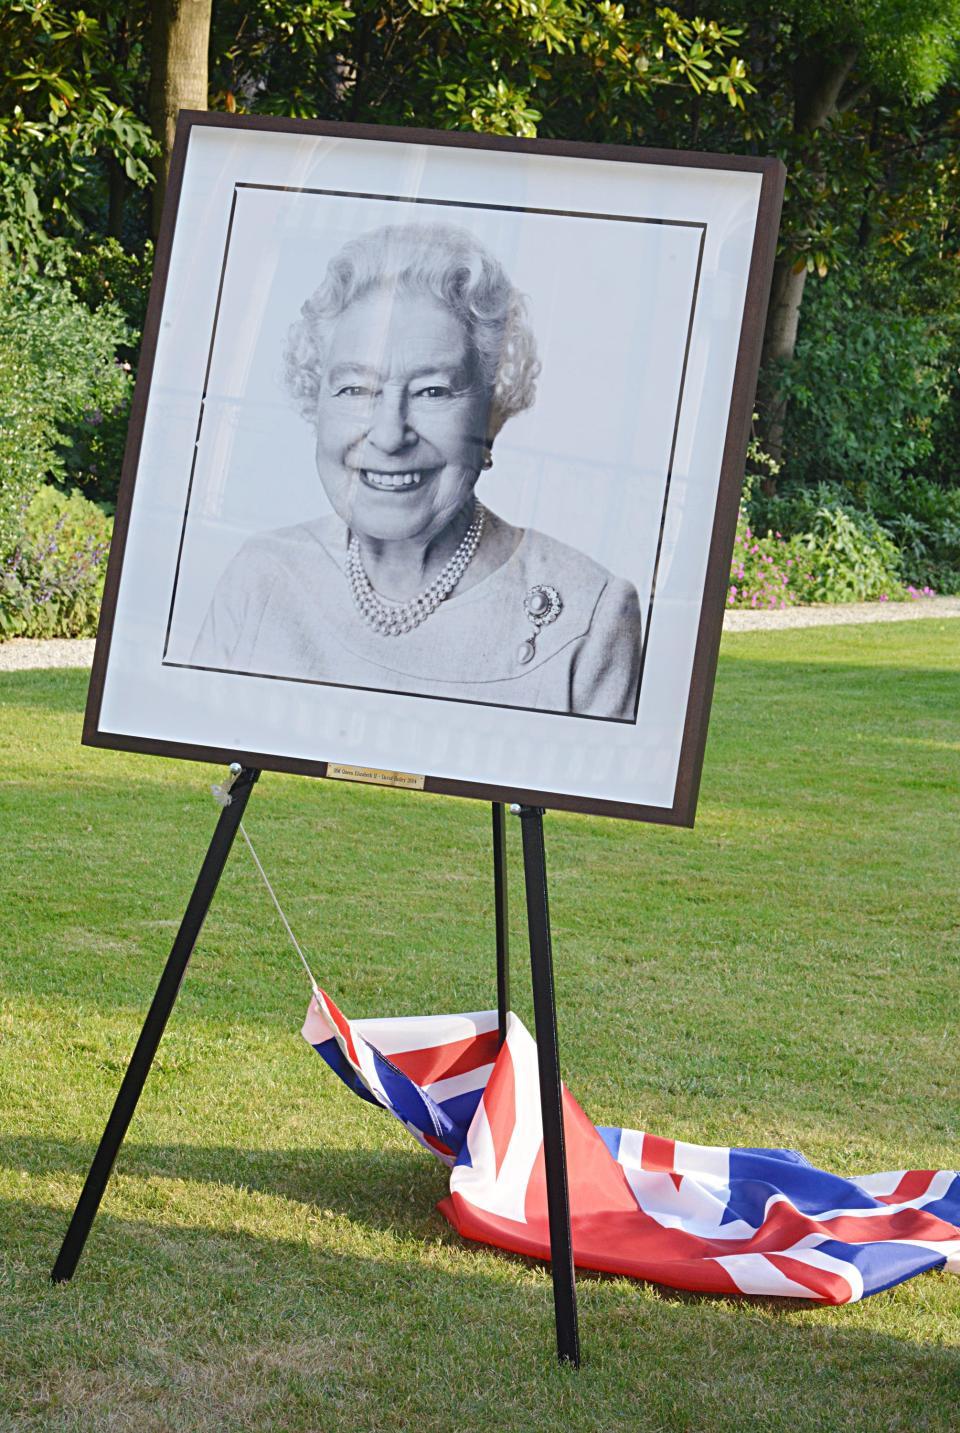 Bailey's 2014 portrait of the Queen.